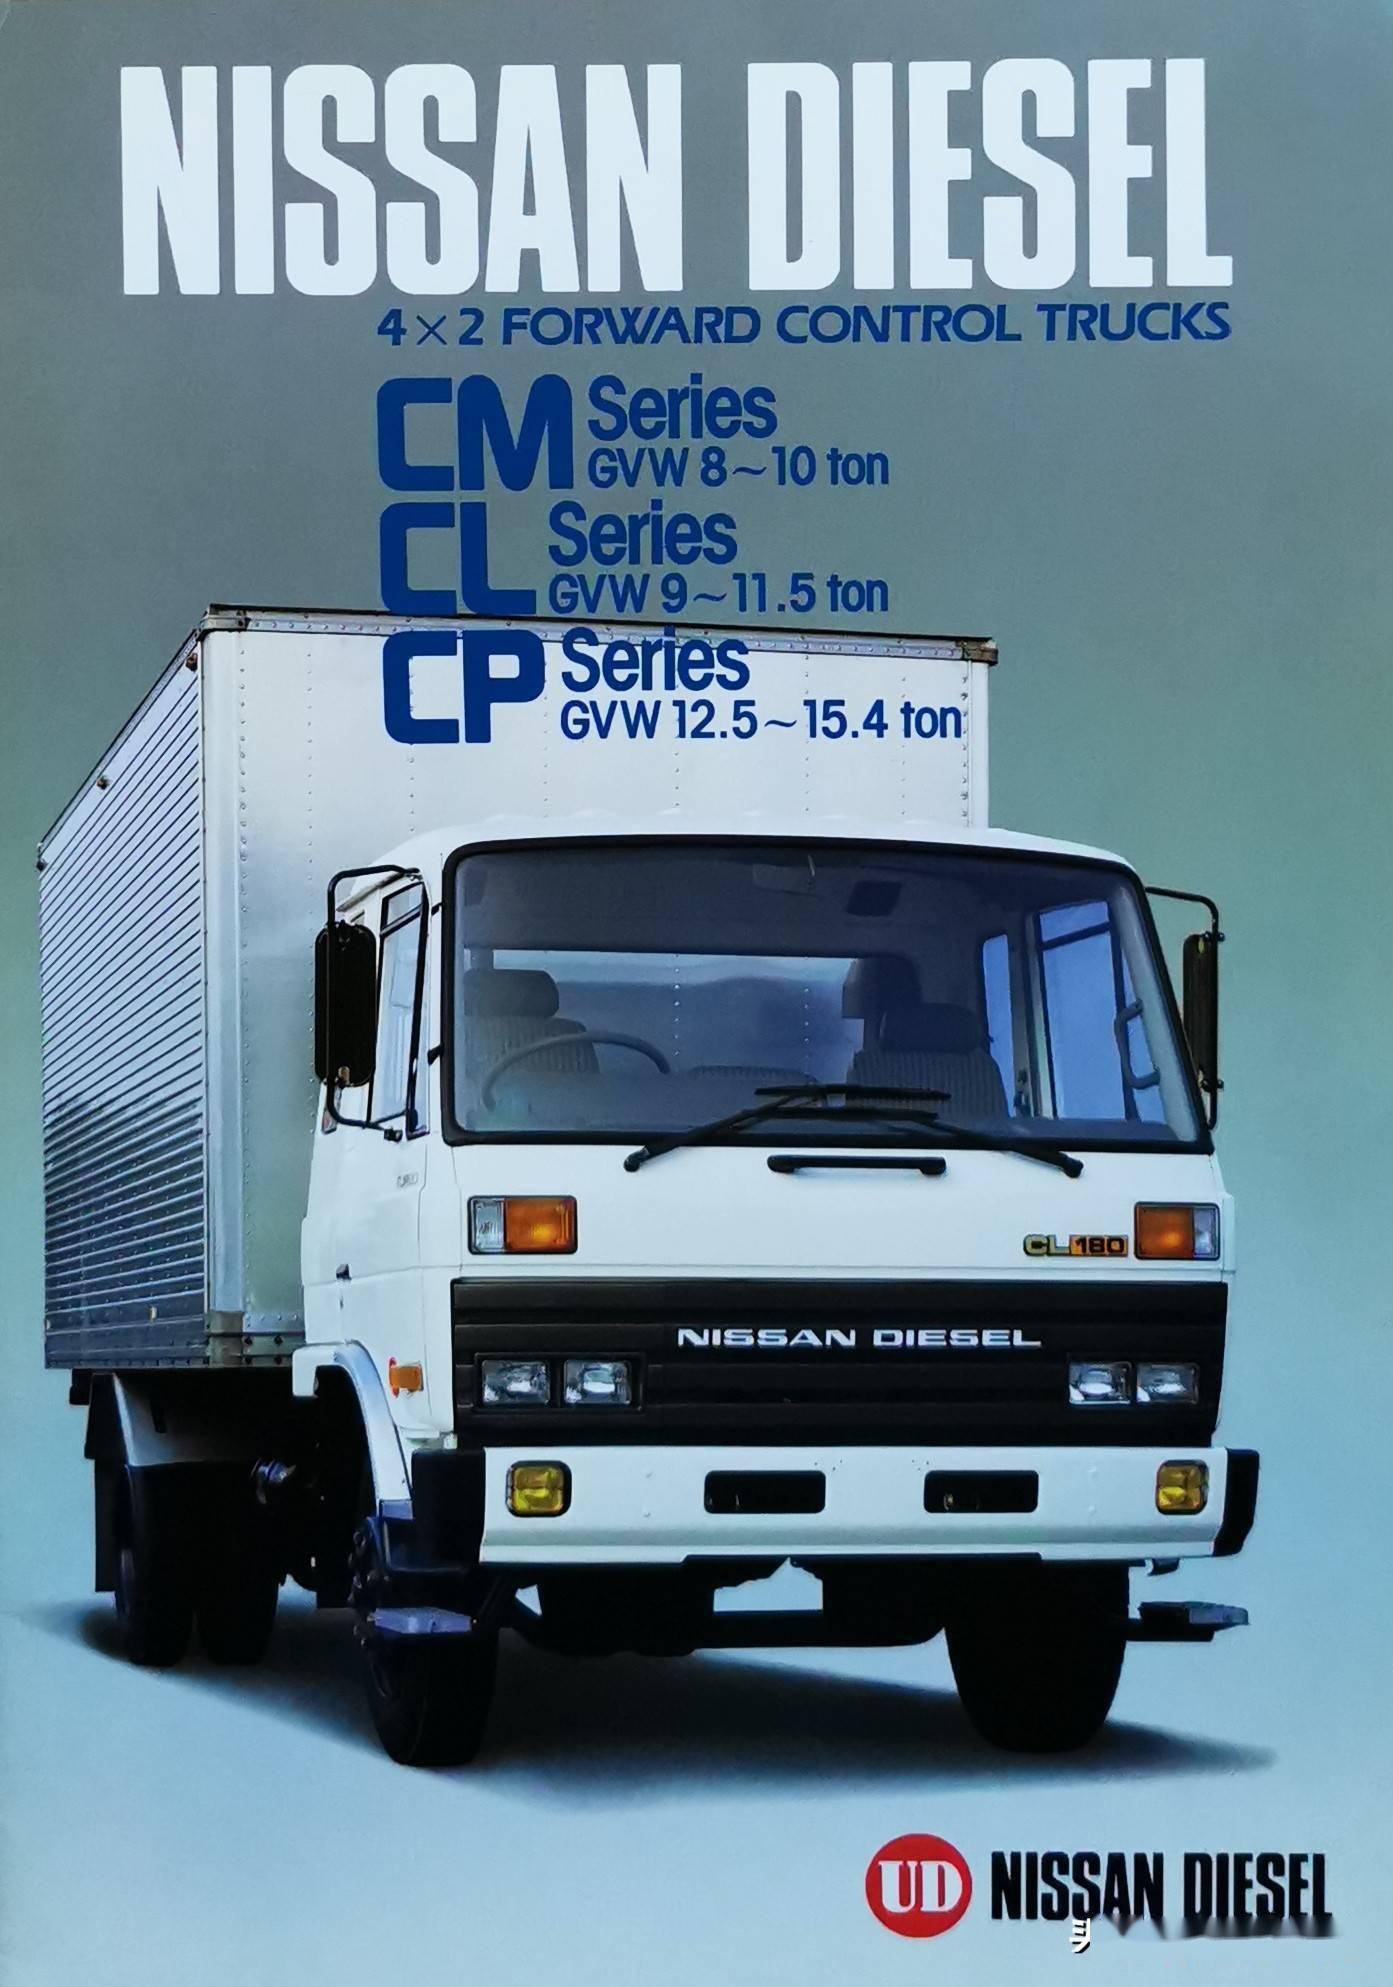 东风原型车国内也曾进口过上世纪80年代的日产柴cm Cl Cp资料样本 系列